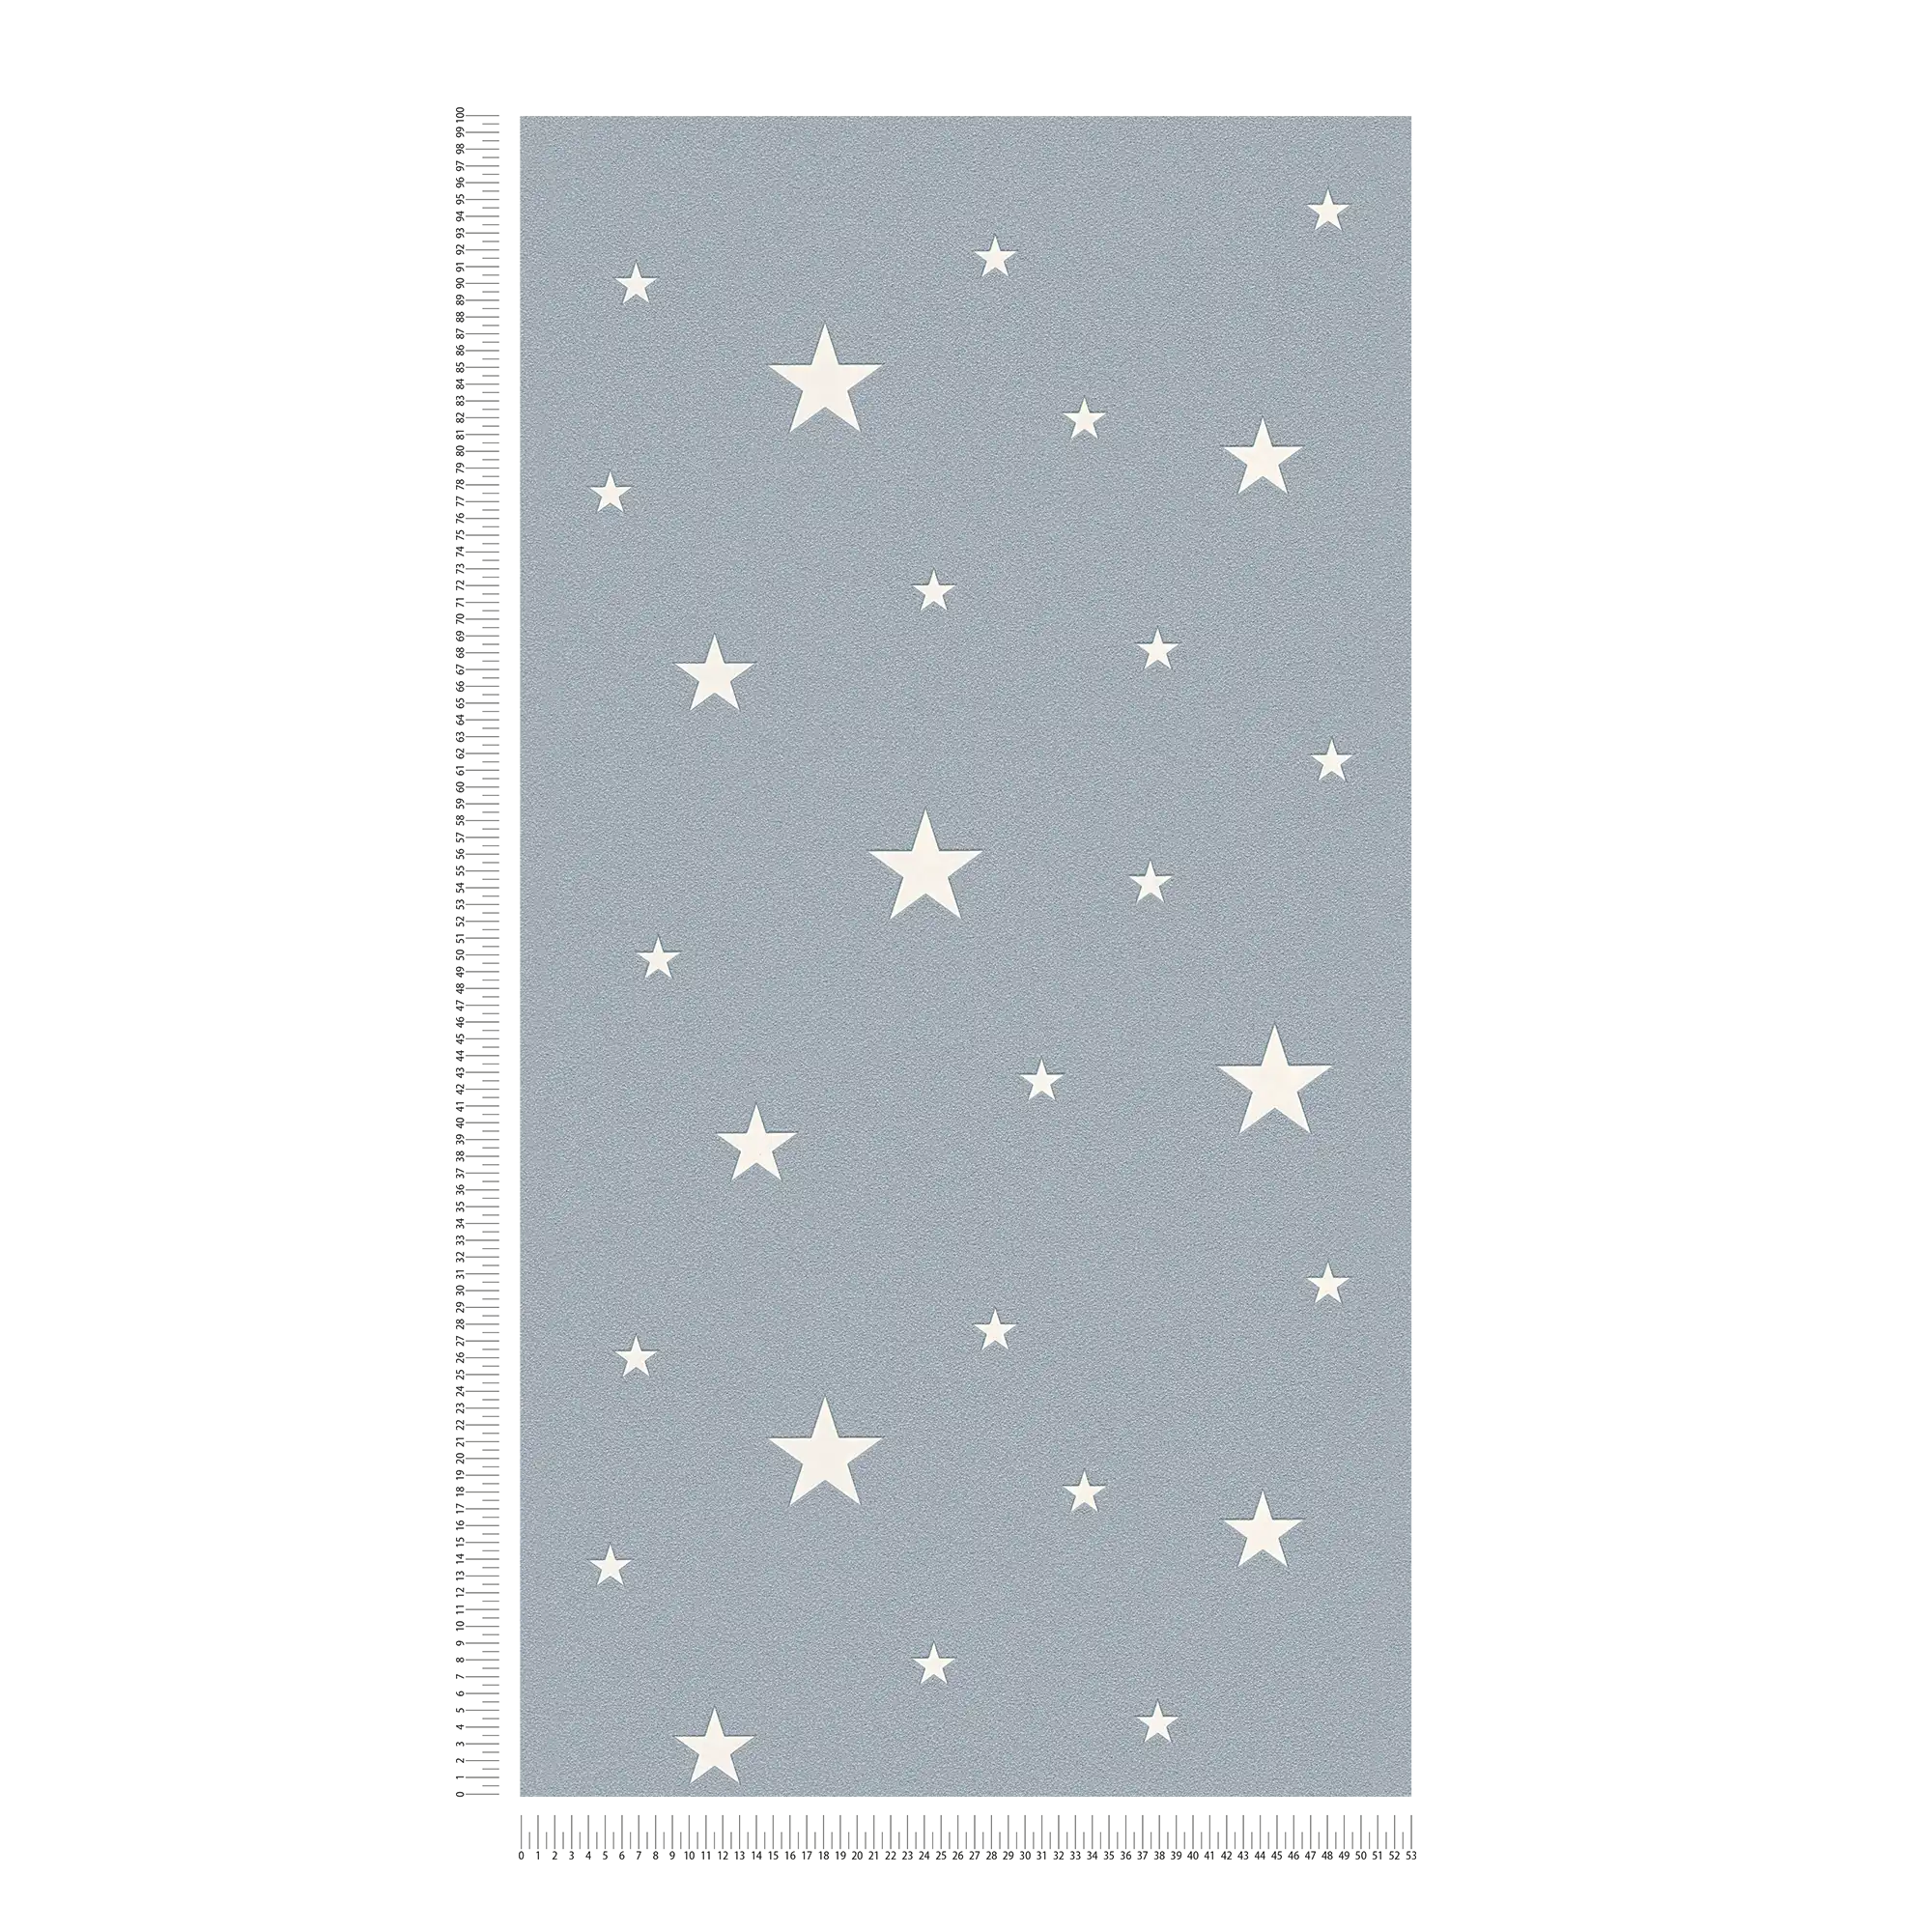             Glow-in-the-dark kinderkamer behang met lichtgevende sterren - smoke blue
        